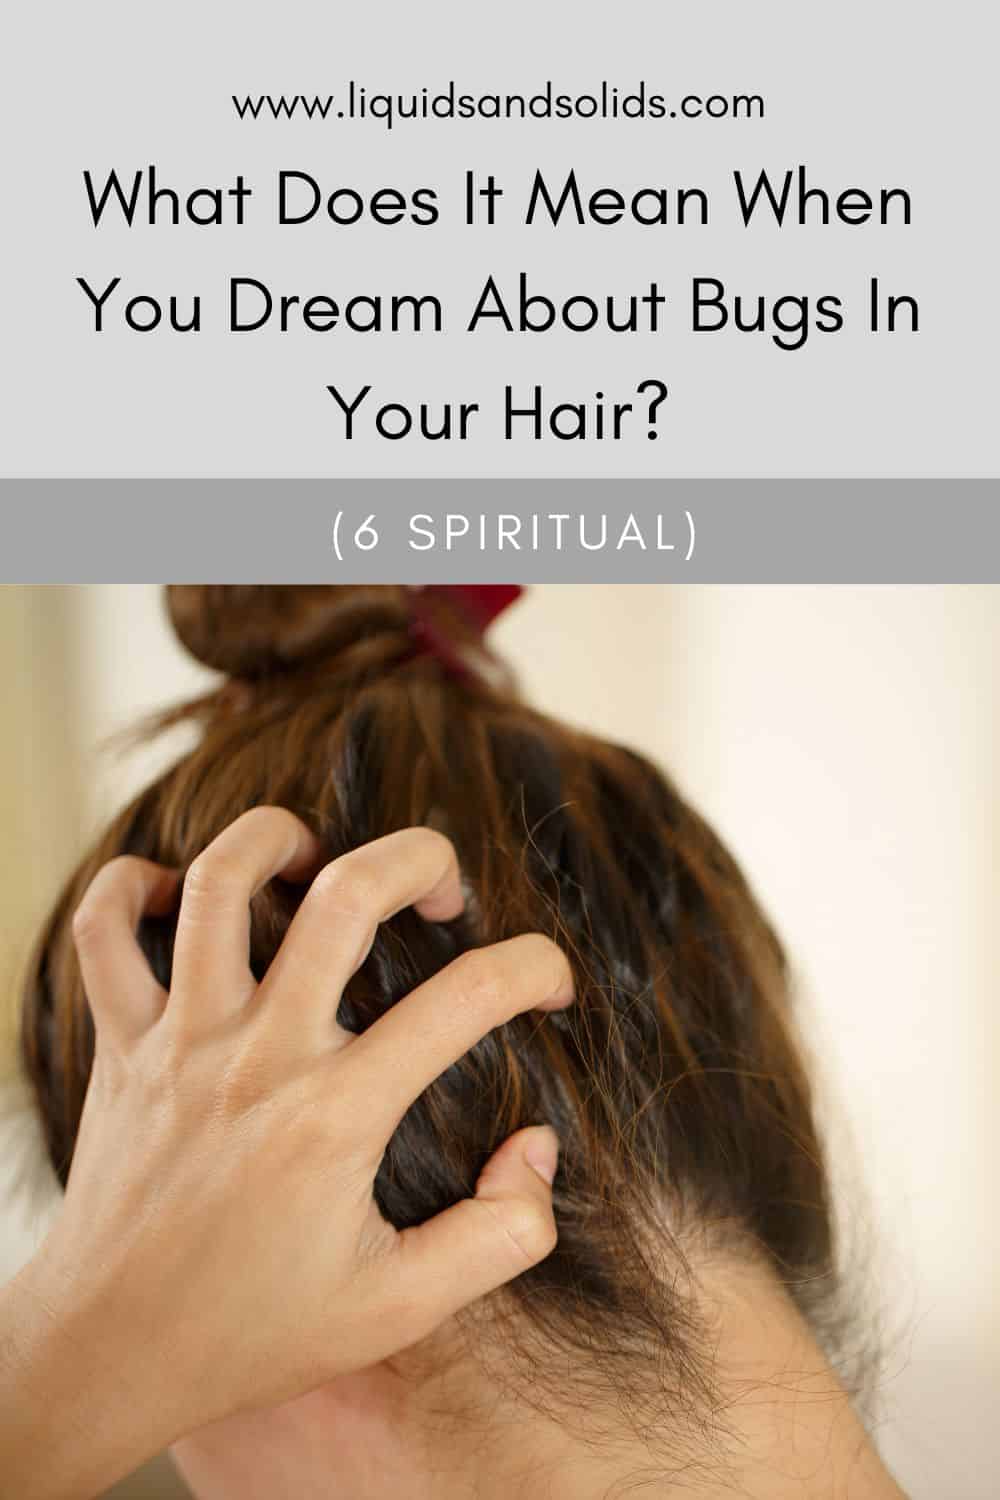  Insekter i hårdrømme (6 spirituelle betydninger)